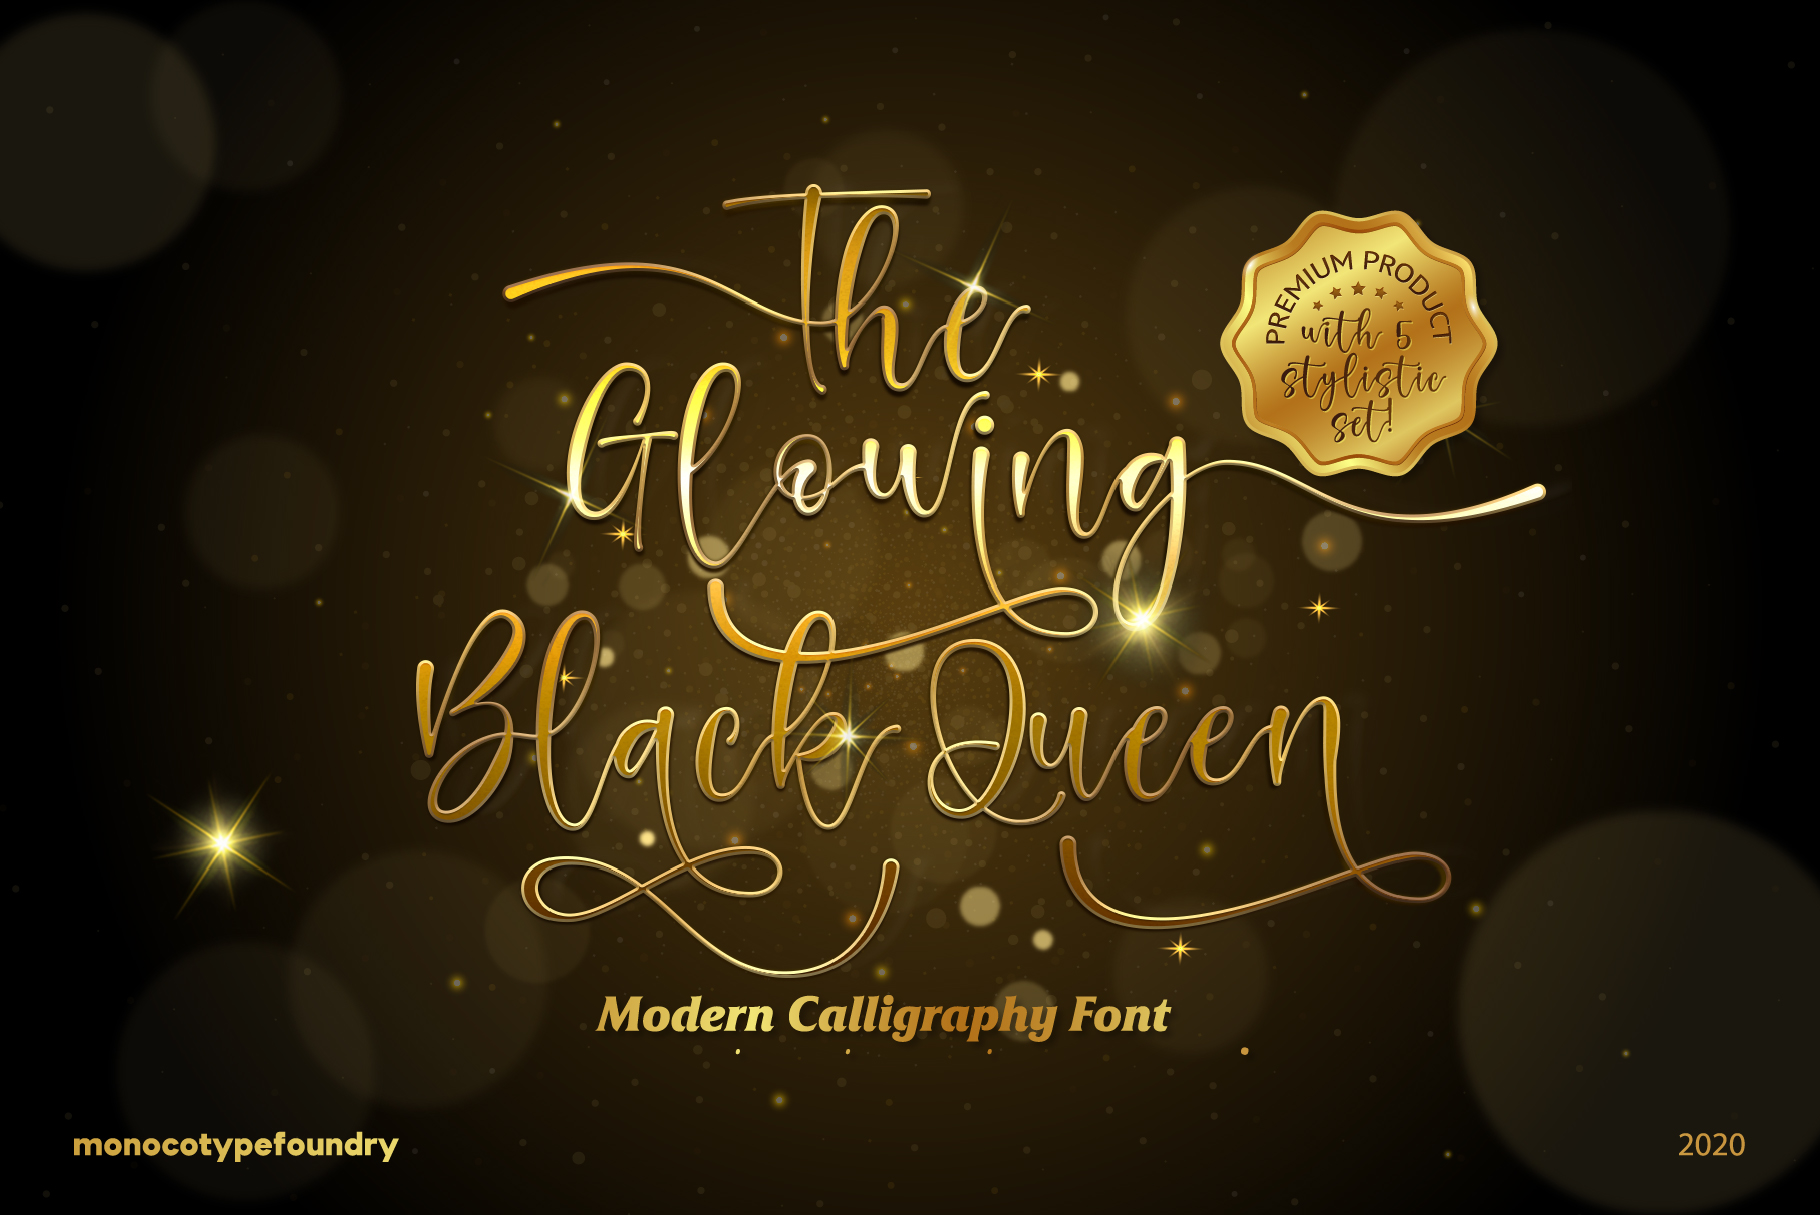 The Glowing Black Queen